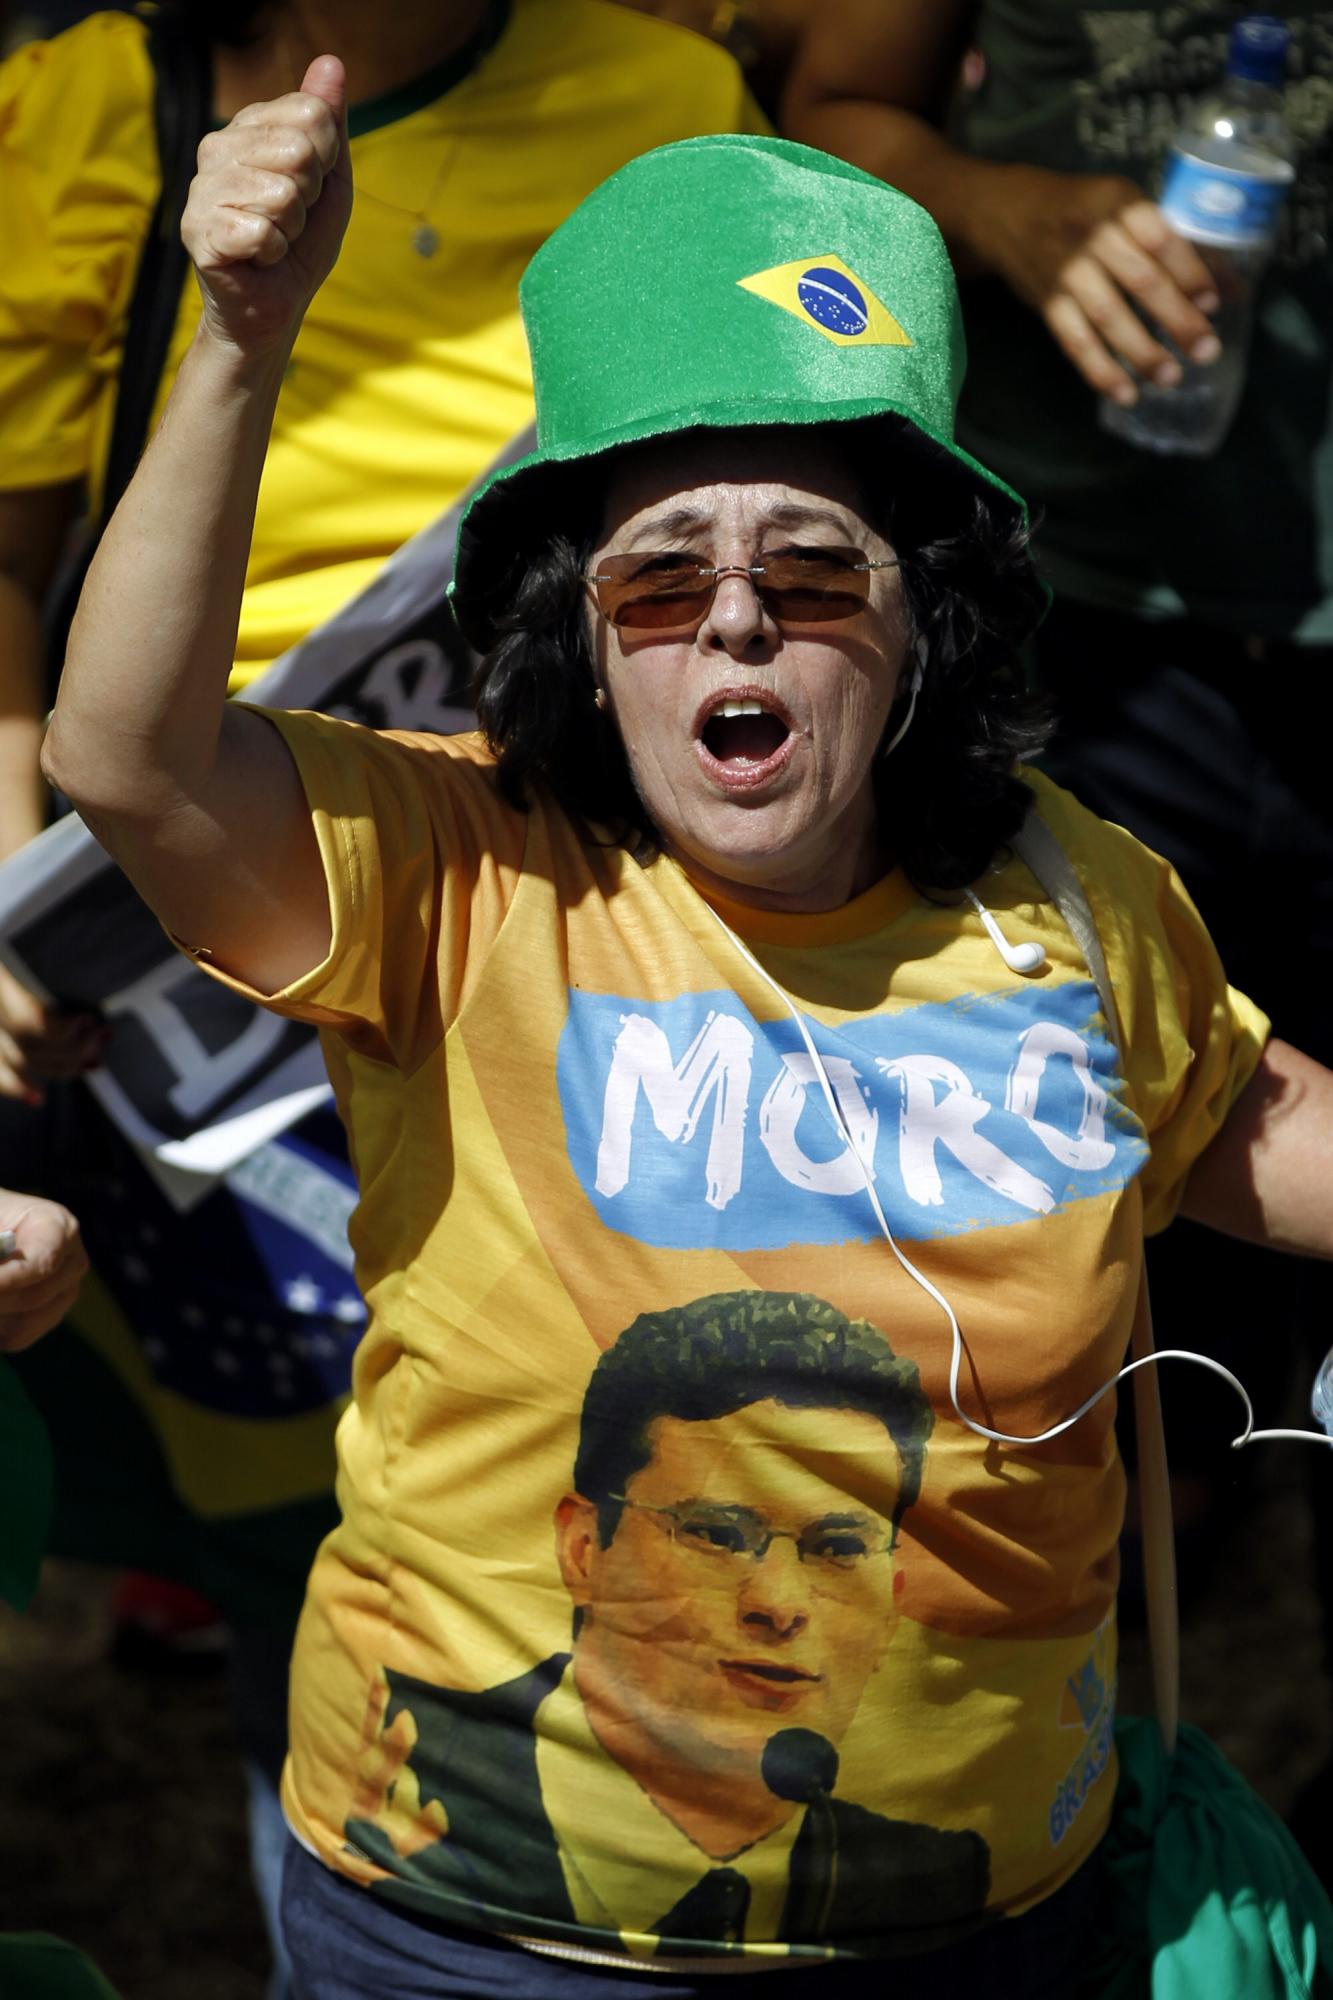  Manifestantes se concentran en la Explanada de los Ministerios para protestar contra el Gobierno de Dilma Rousseff hoy, domingo 16 de agosto de 2015, en Brasilia (Brasil). Miles de personas se concentraron en decenas de ciudades de Brasil para manifestaciones convocadas por la oposición, que pretende dar una prueba de fuerza y protestar por la corrupción y la gestión económica del Gobierno de Dilma Rousseff. 